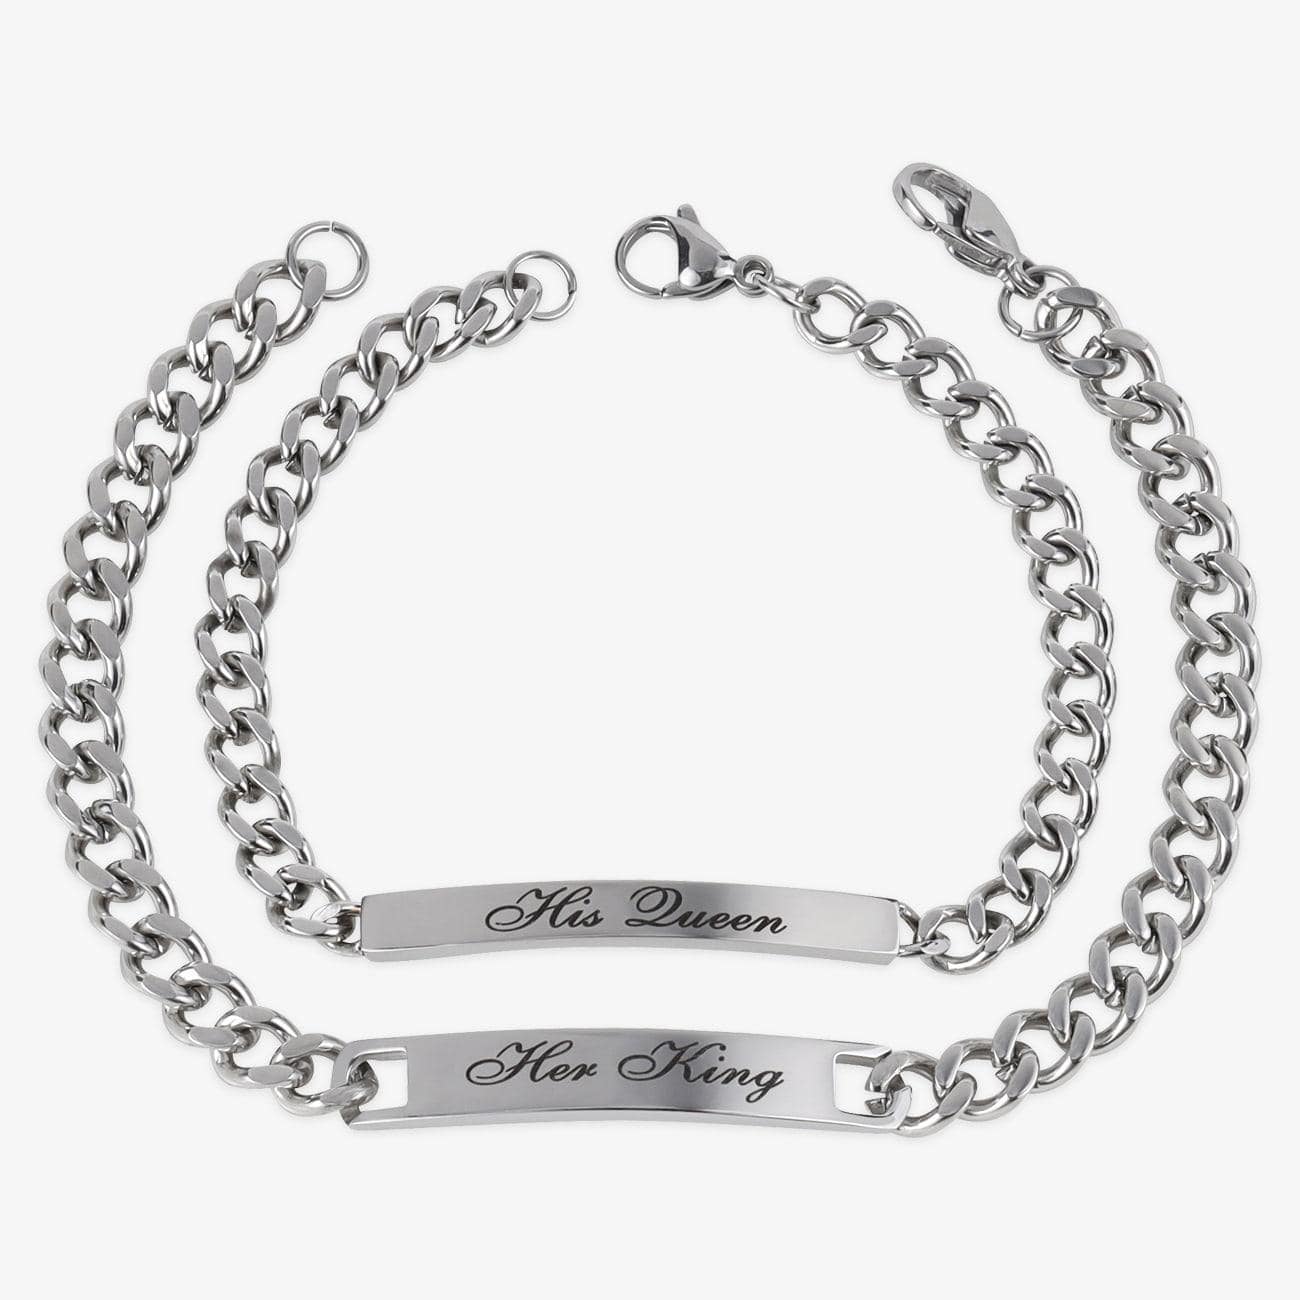 herzschmuck Bracelets Personalized Couples Bracelet Set